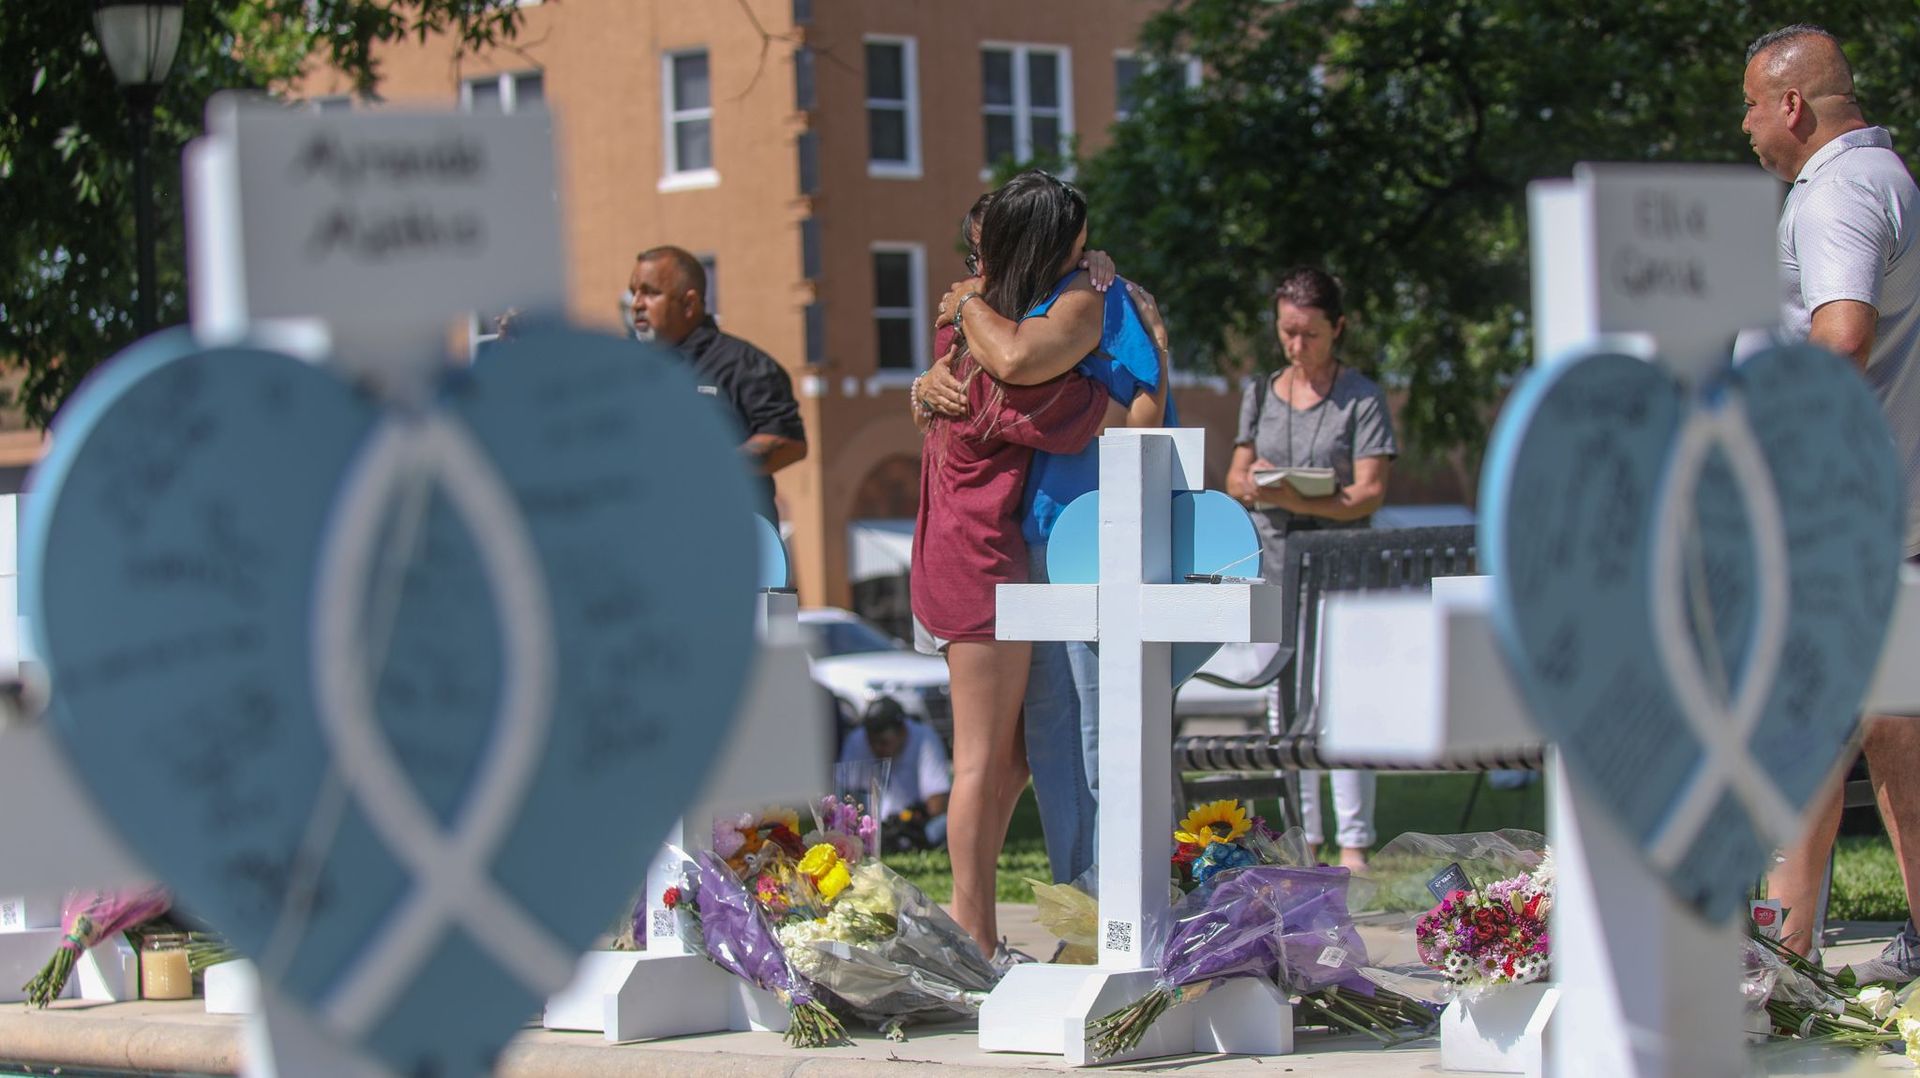 Des personnes en deuil visitent un mémorial pour les victimes de la fusillade de mardi dans une école primaire, sur la place de la ville d’Uvalde, le 26 mai 2022 au Texas.